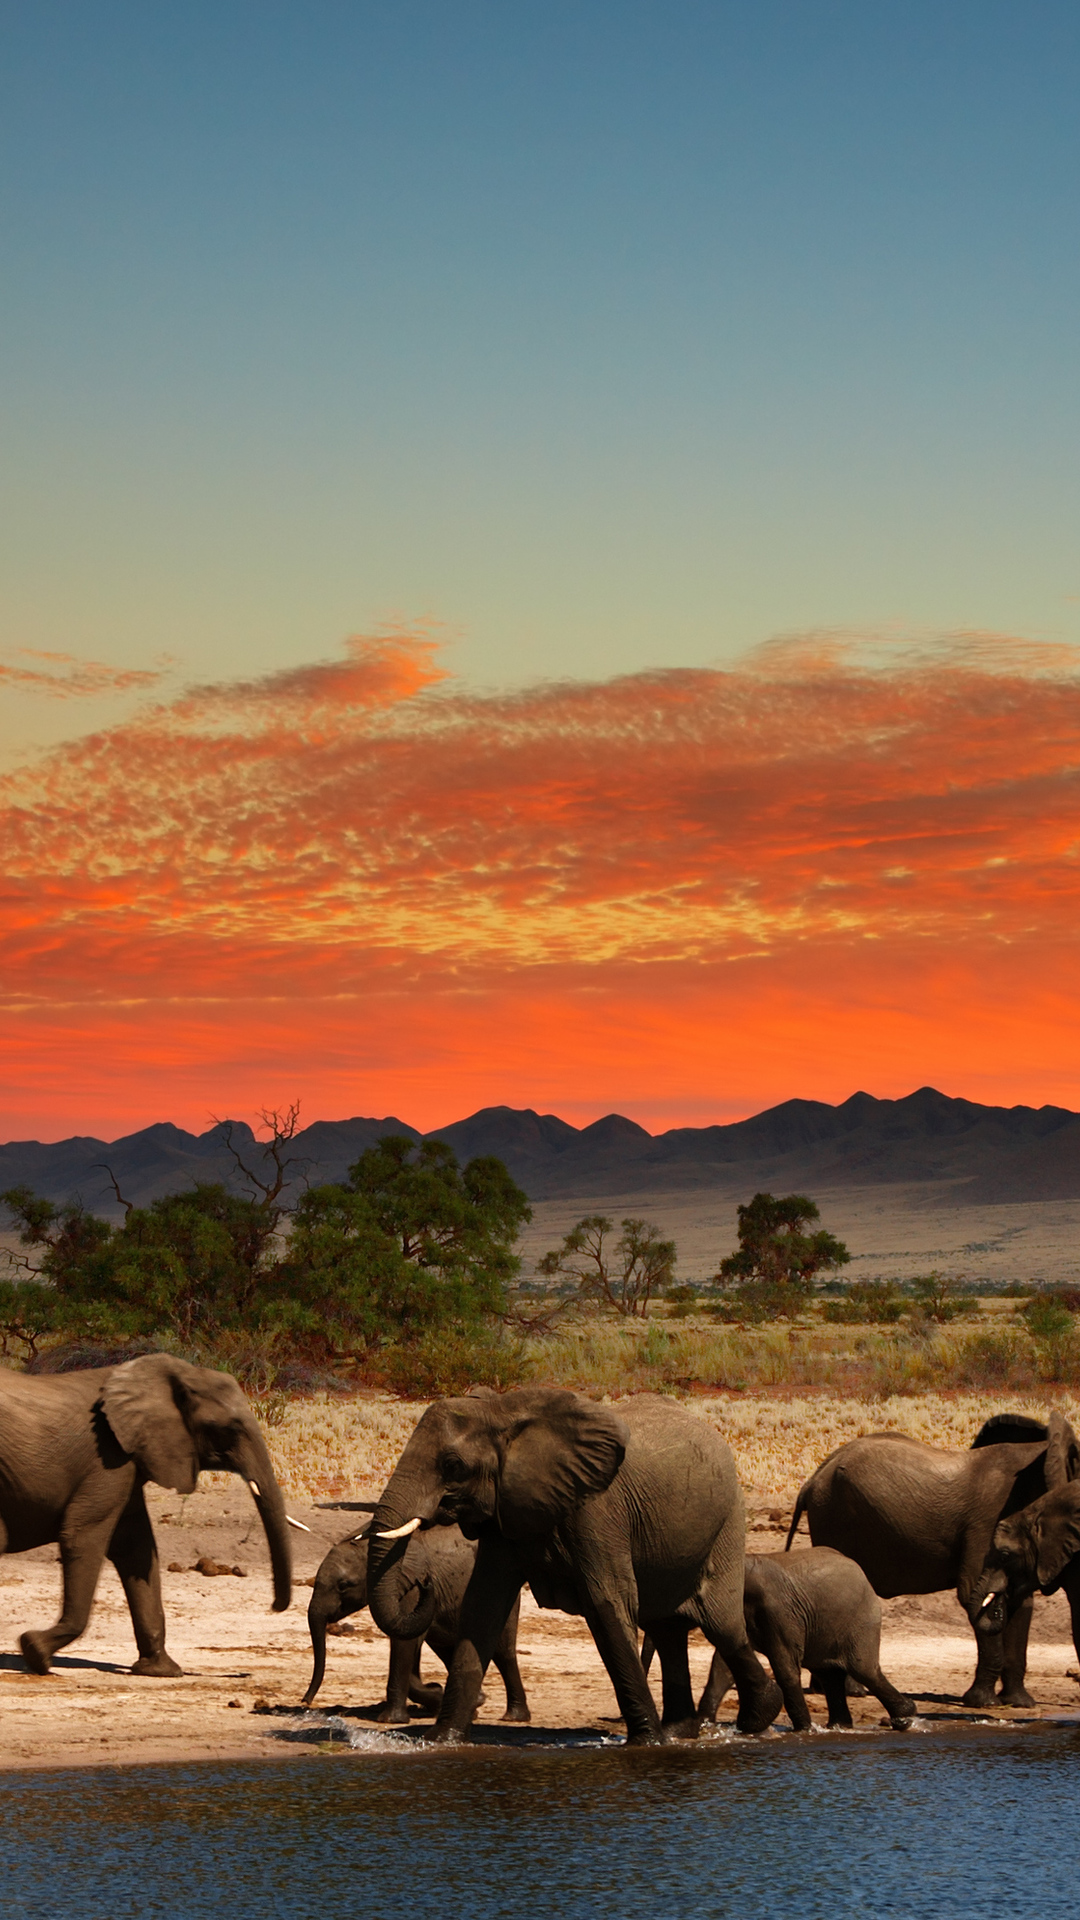 Herd of Elephants in African savanna 4K Ultra HD wallpaper | 4k ...